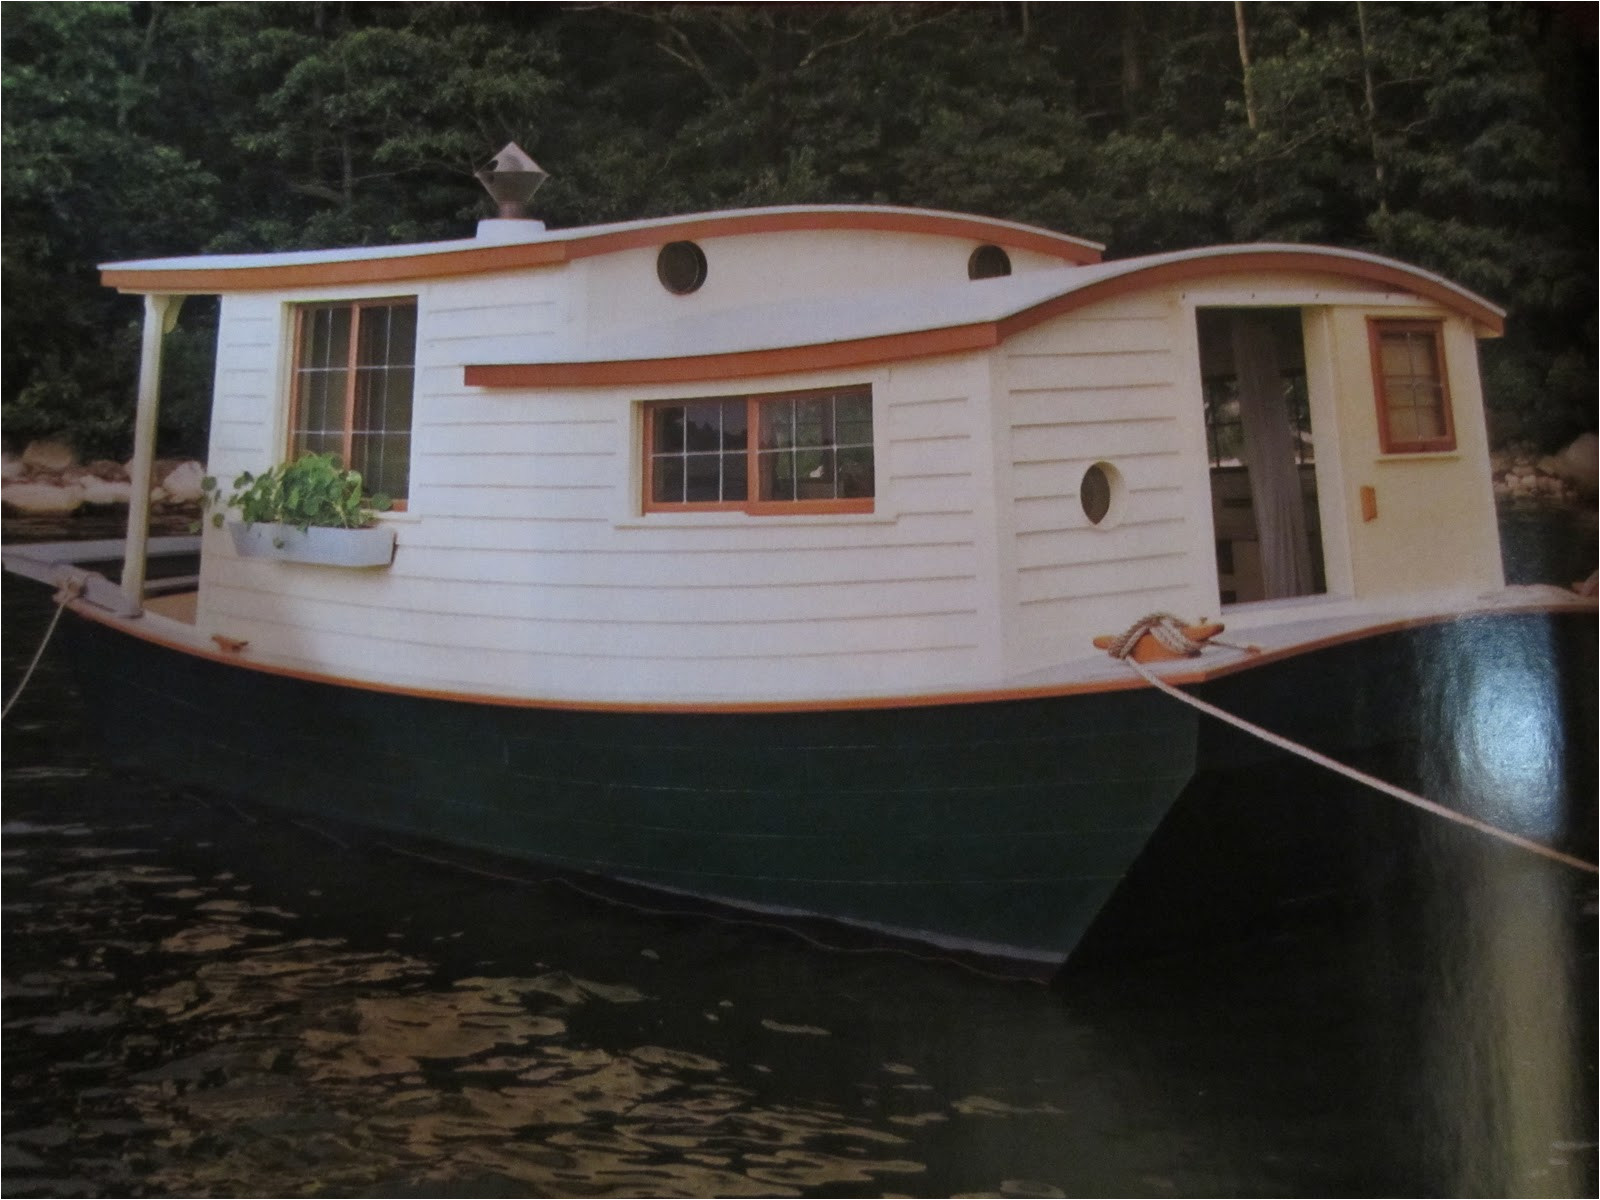 an unbelievable shantyboathouseboat in wooden boat magazine